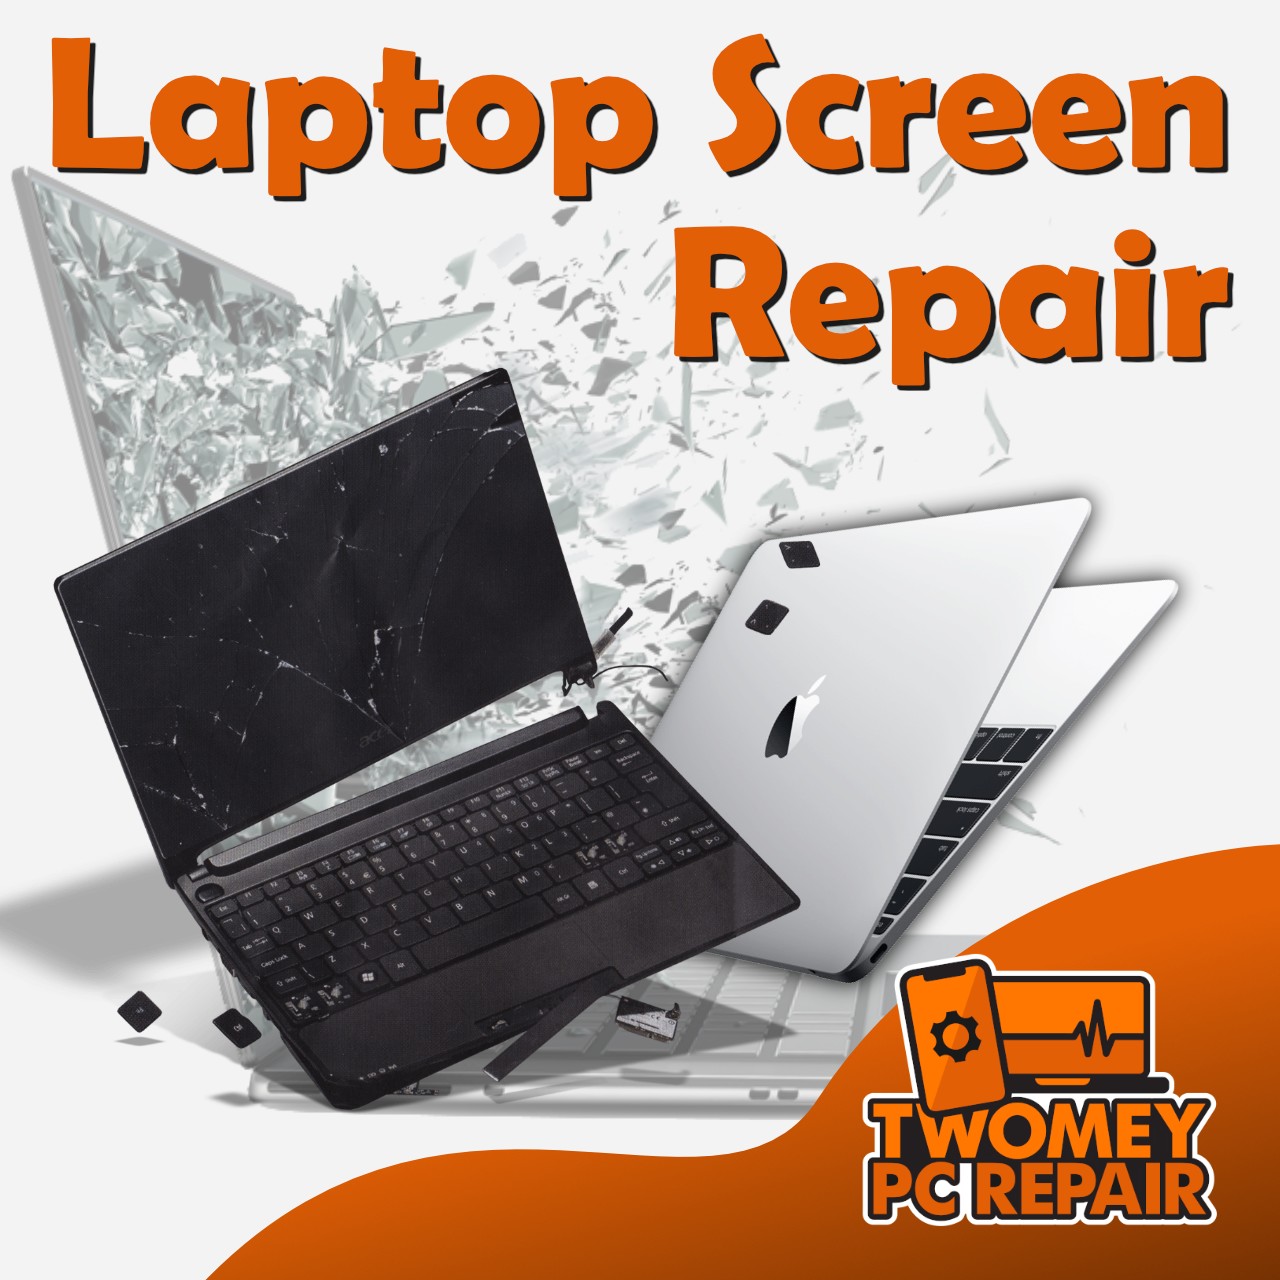 A laptop screen repair with the words laptop screen repair.